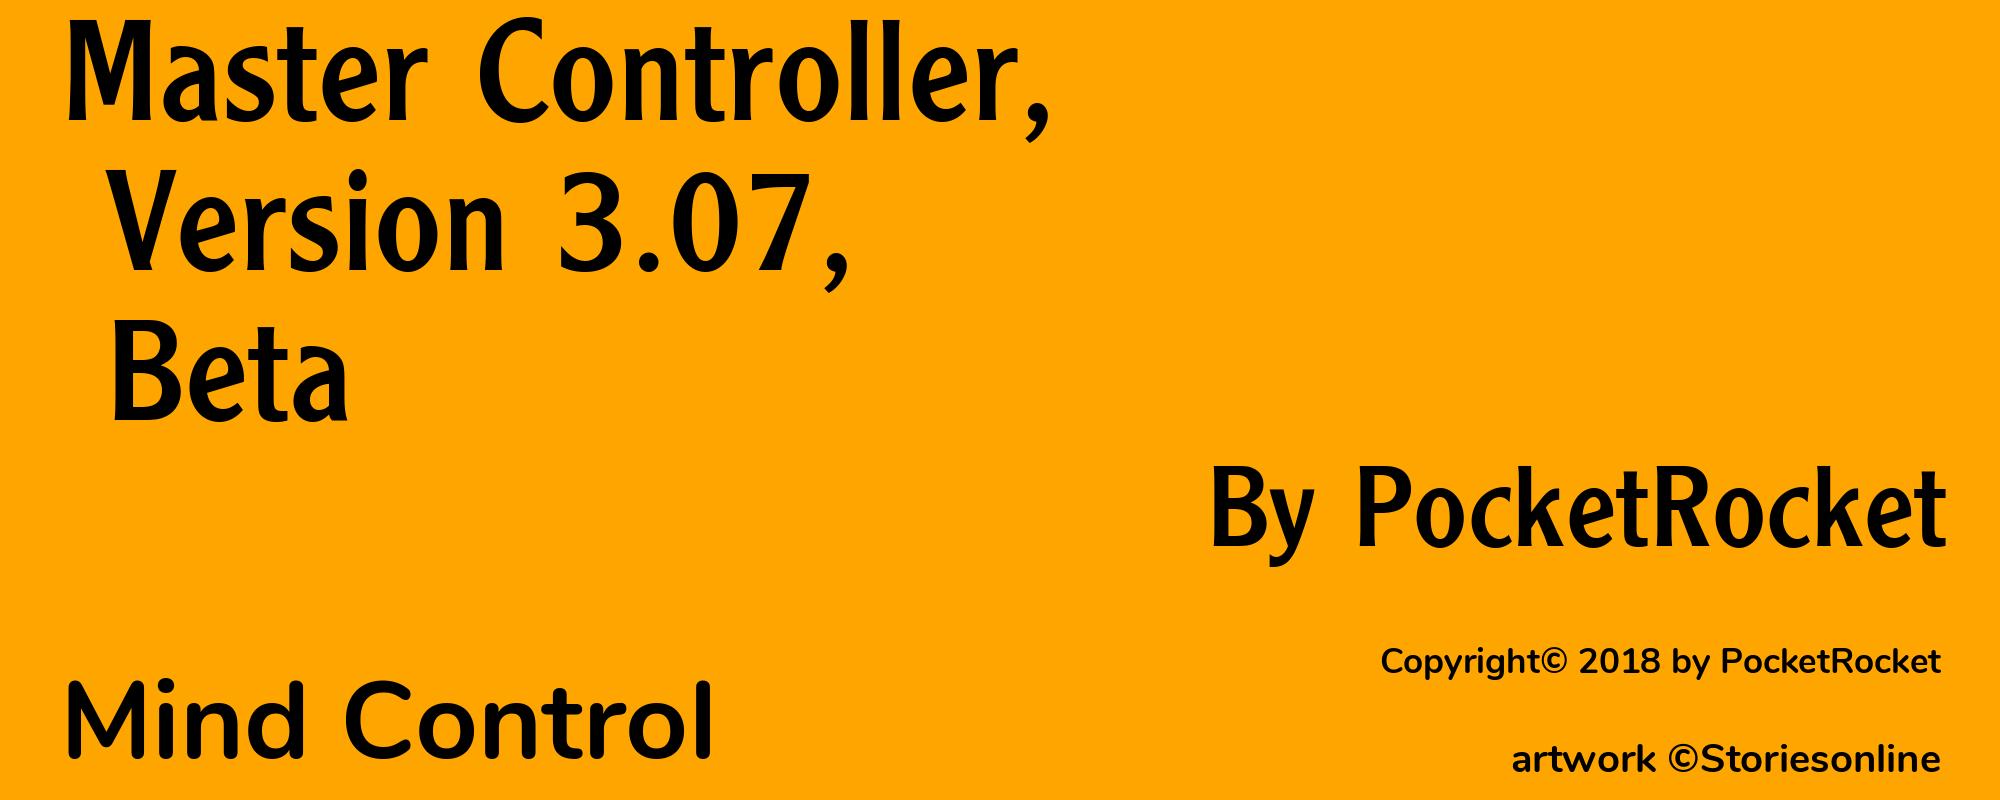 Master Controller, Version 3.07, Beta - Cover